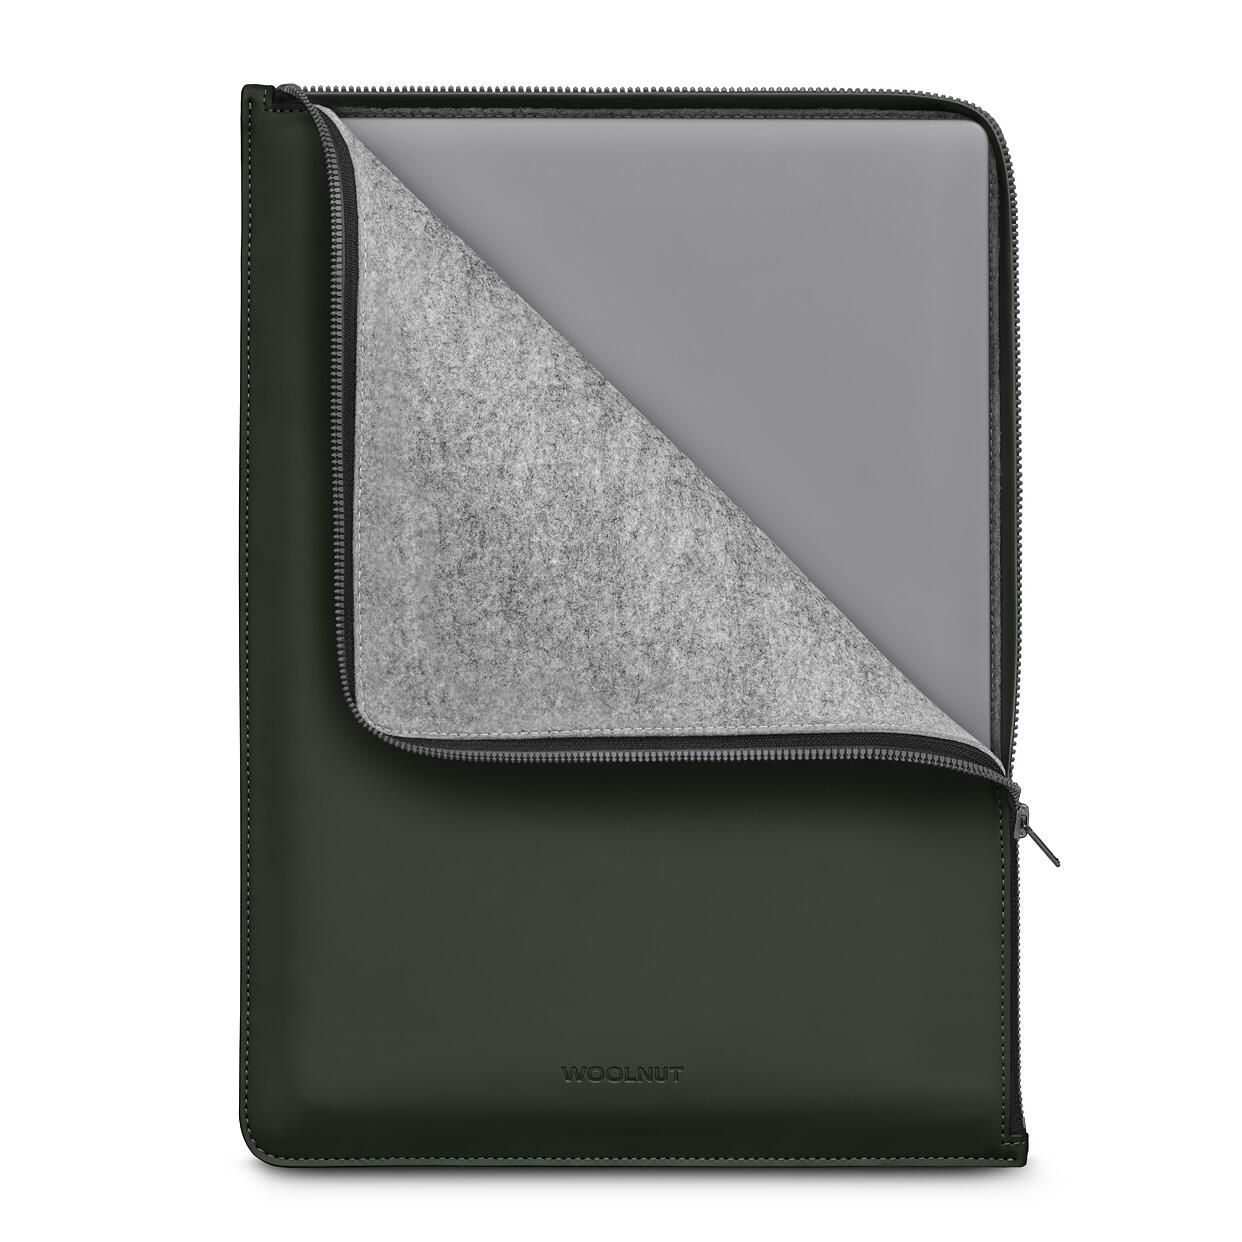 Woolnut beschichtetes Folio für MacBook Pro 16", grün